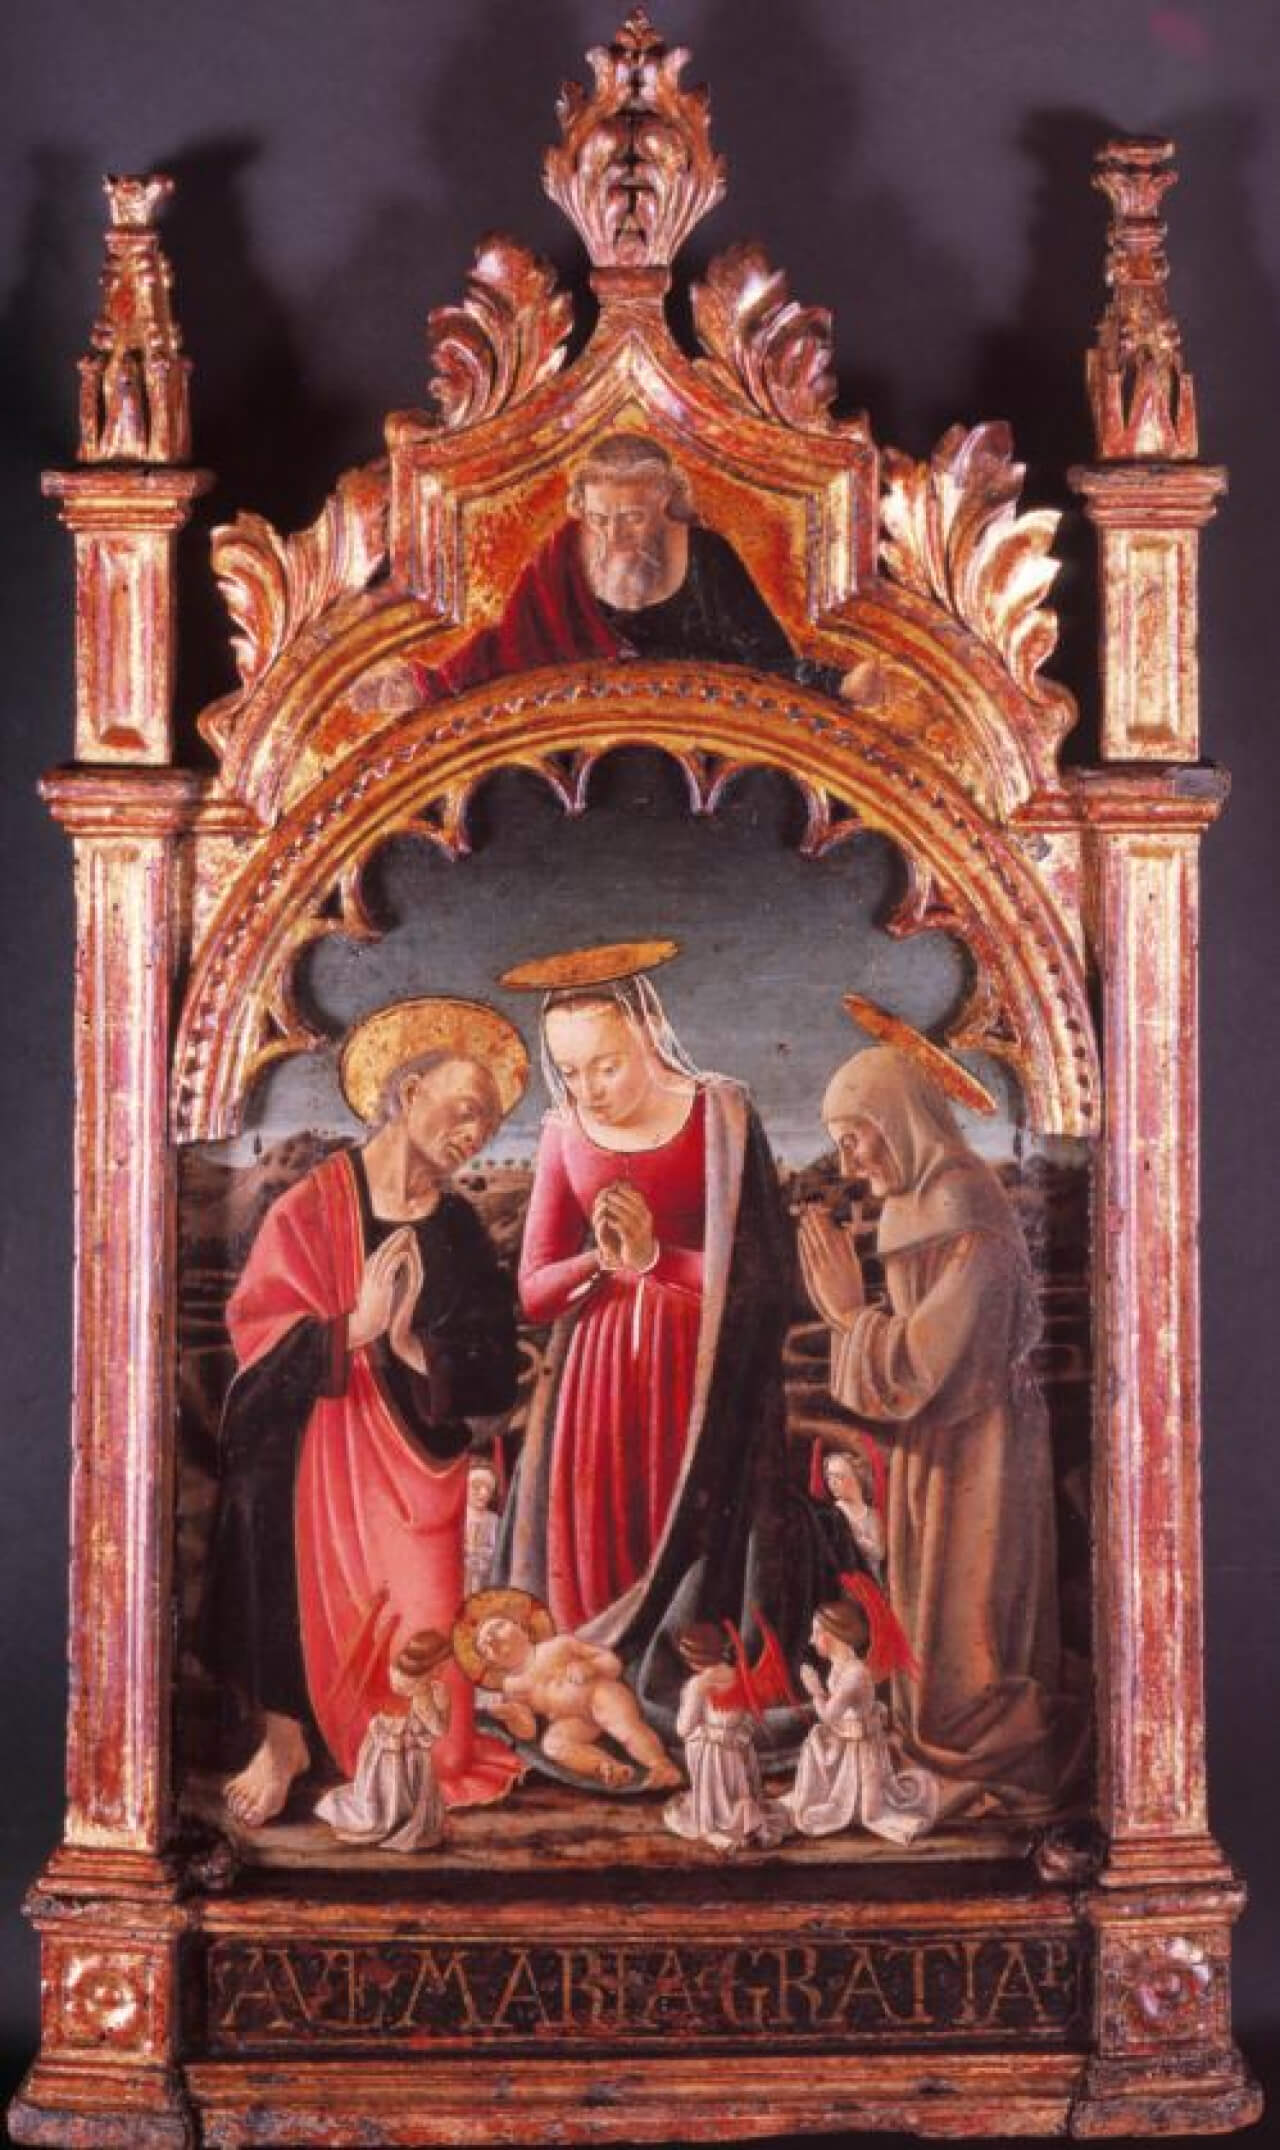 L’Adorazione del Bambino con San Bernardino – Il Padre Eterno benedicente